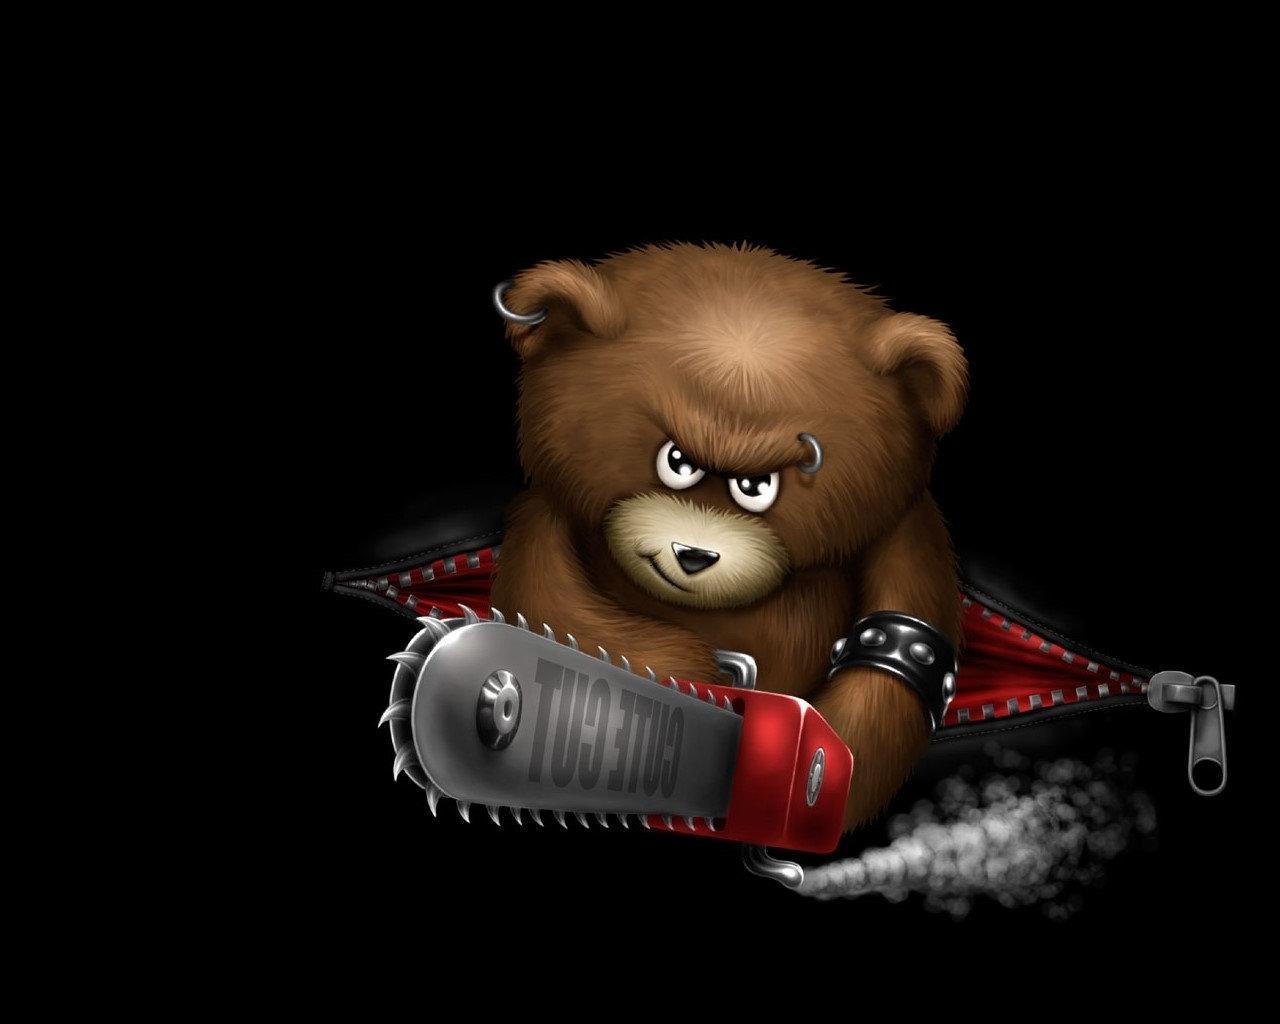 3d обои Крутой медведь металлист с пирсингом и бензопилой смотрит угрожающим взглядом (Cute cut)  игрушки # 41332